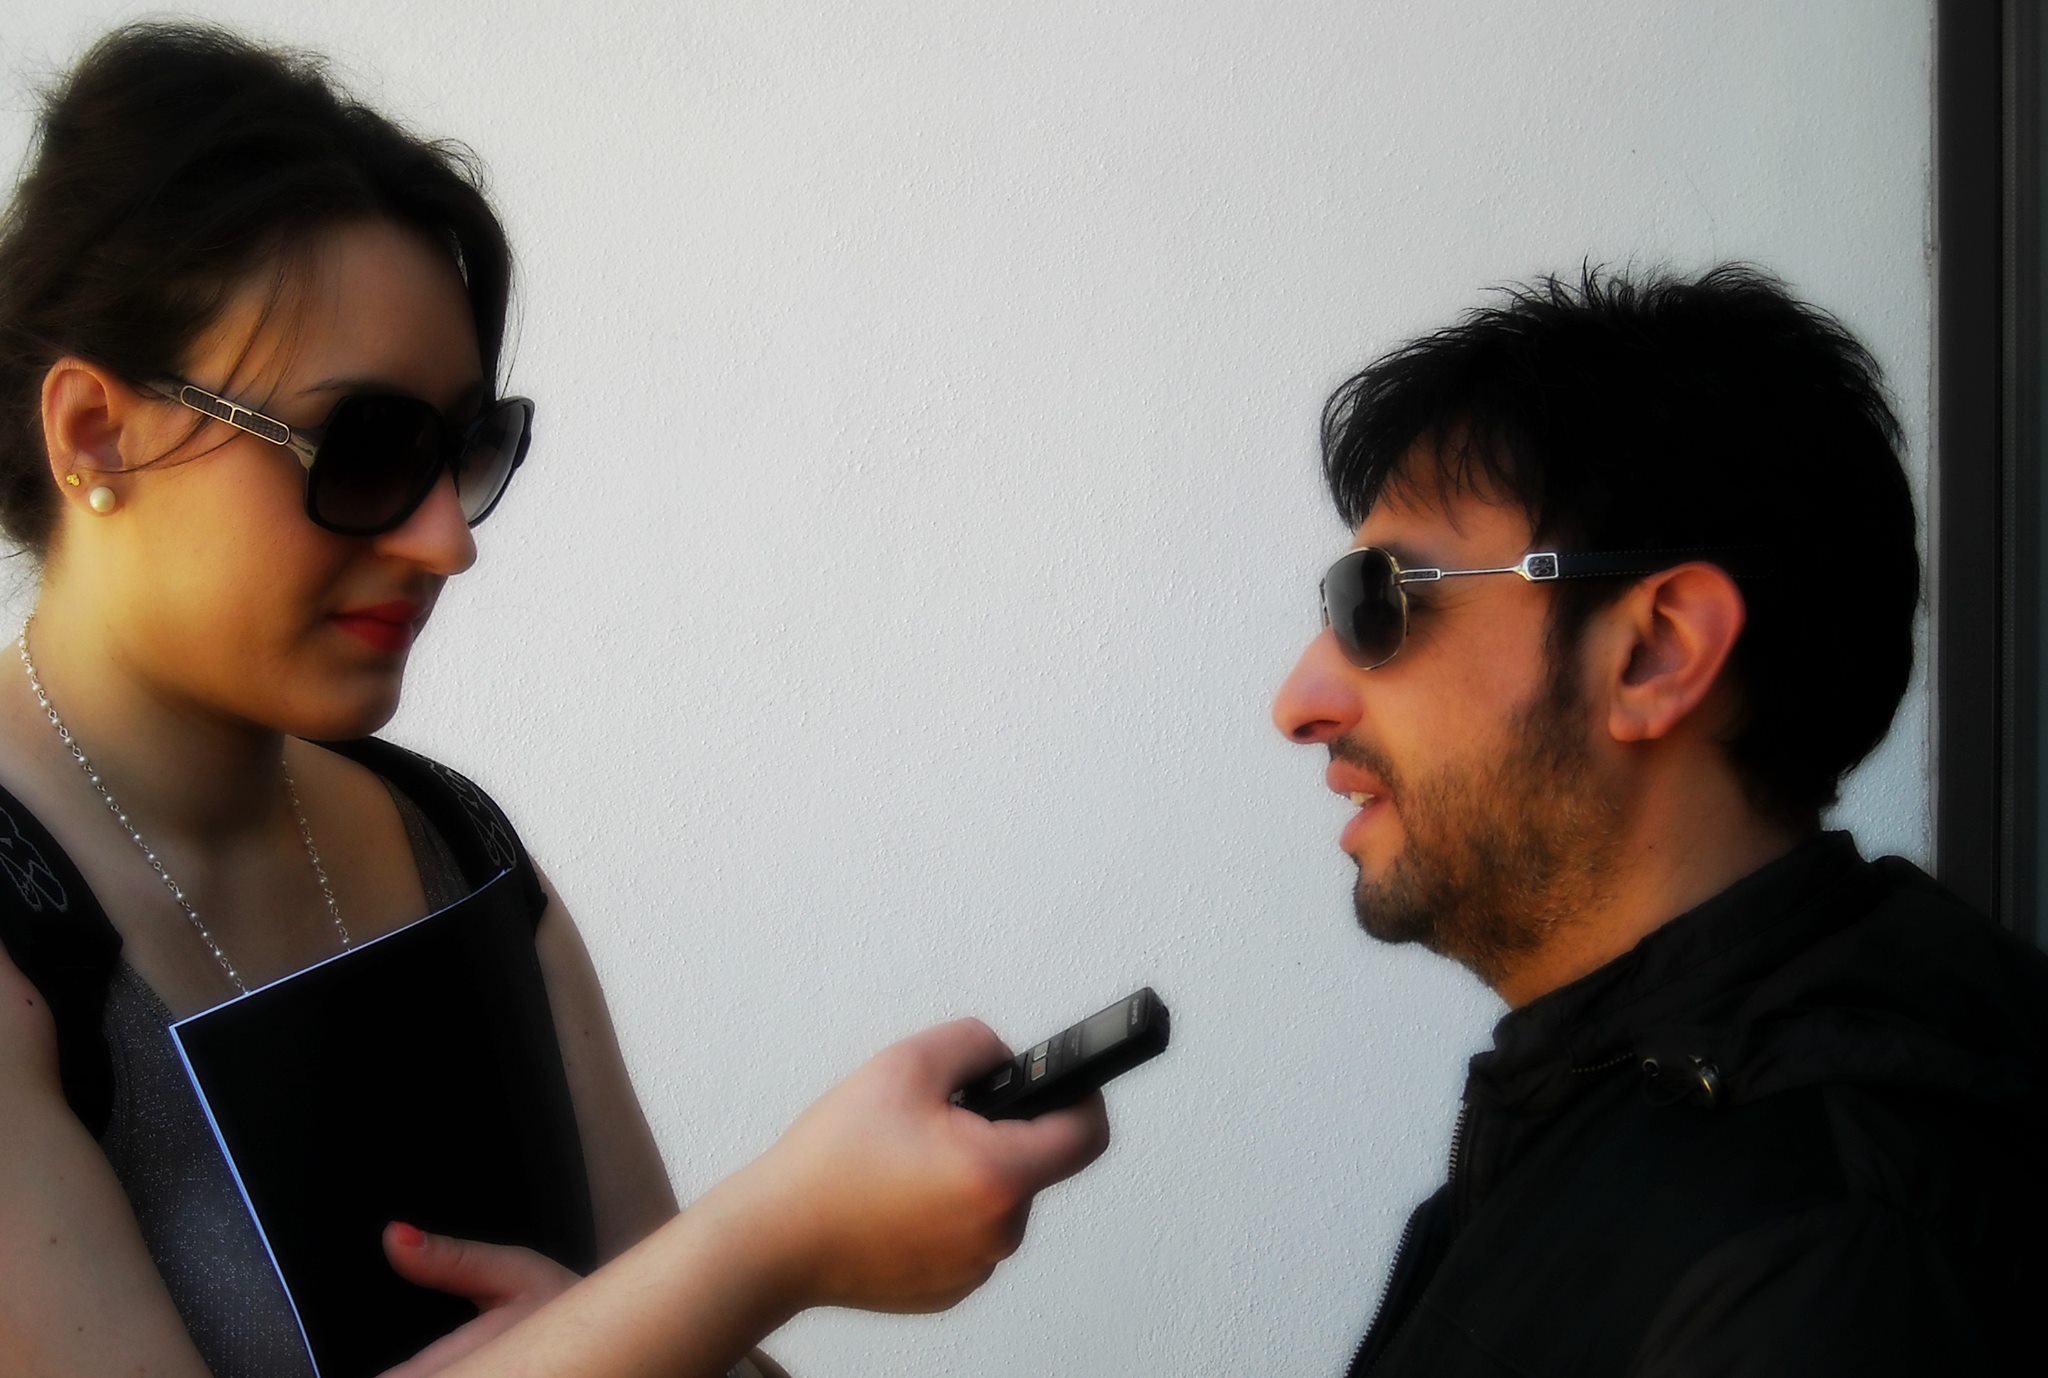 Intervista al cantante Gigi Finizio per la presentazione dell'album "Buona Luna" (Roma)